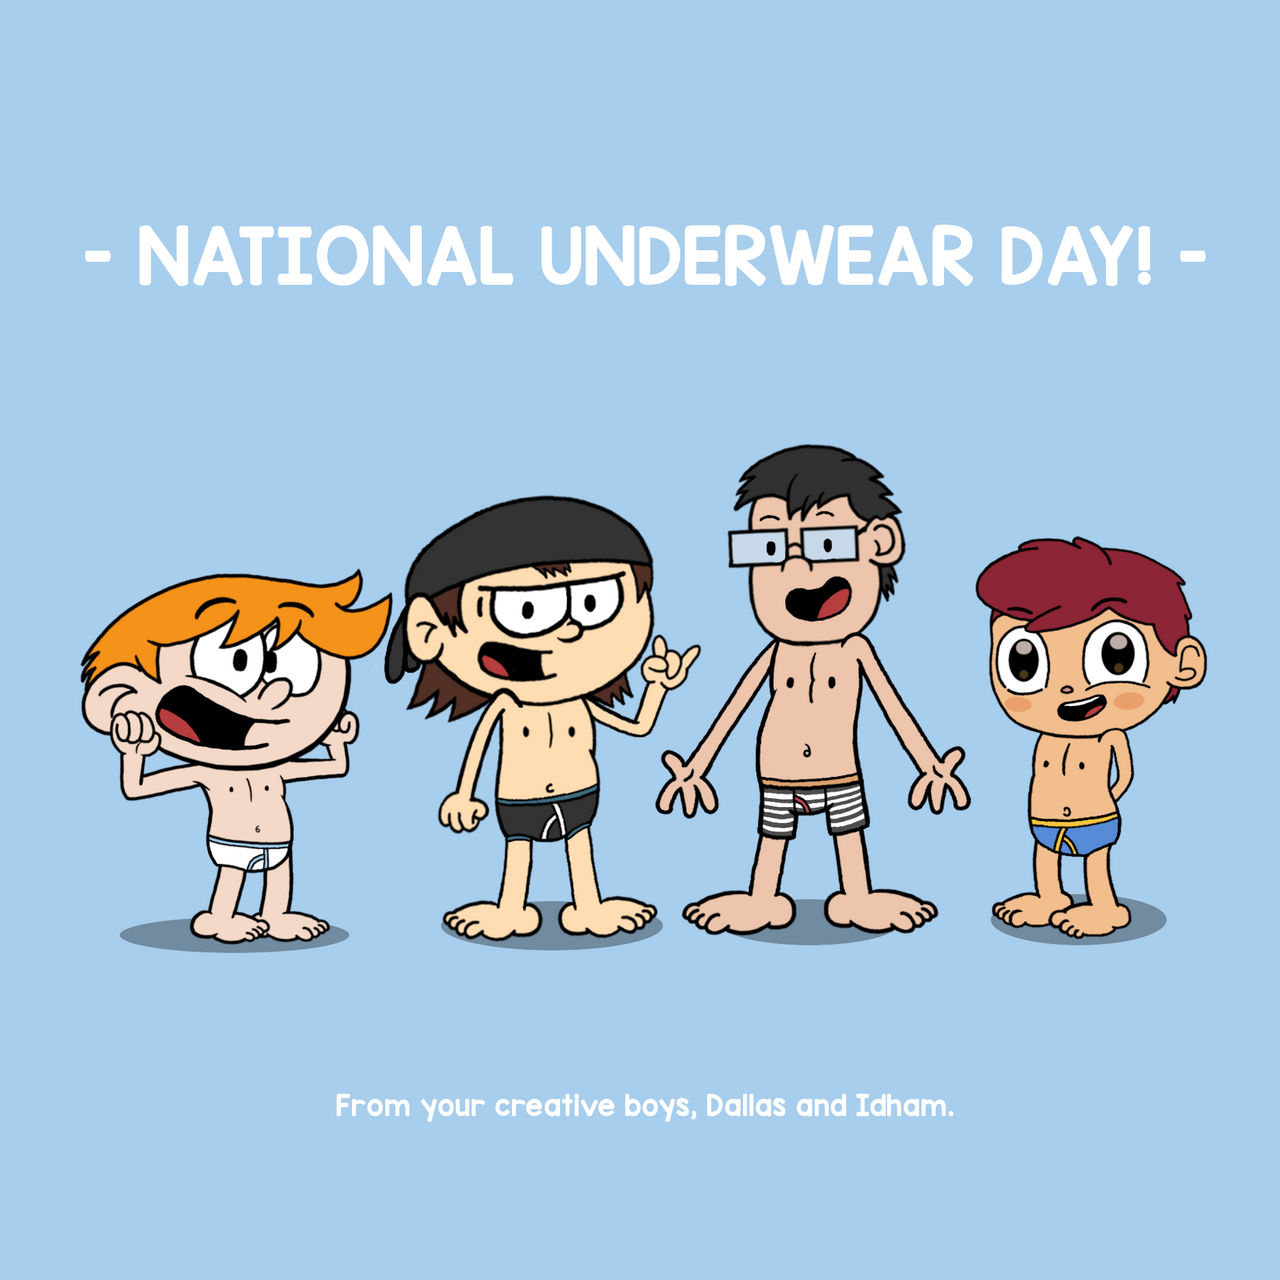 Happy Underwear Day by Blackdoraemon360 on DeviantArt